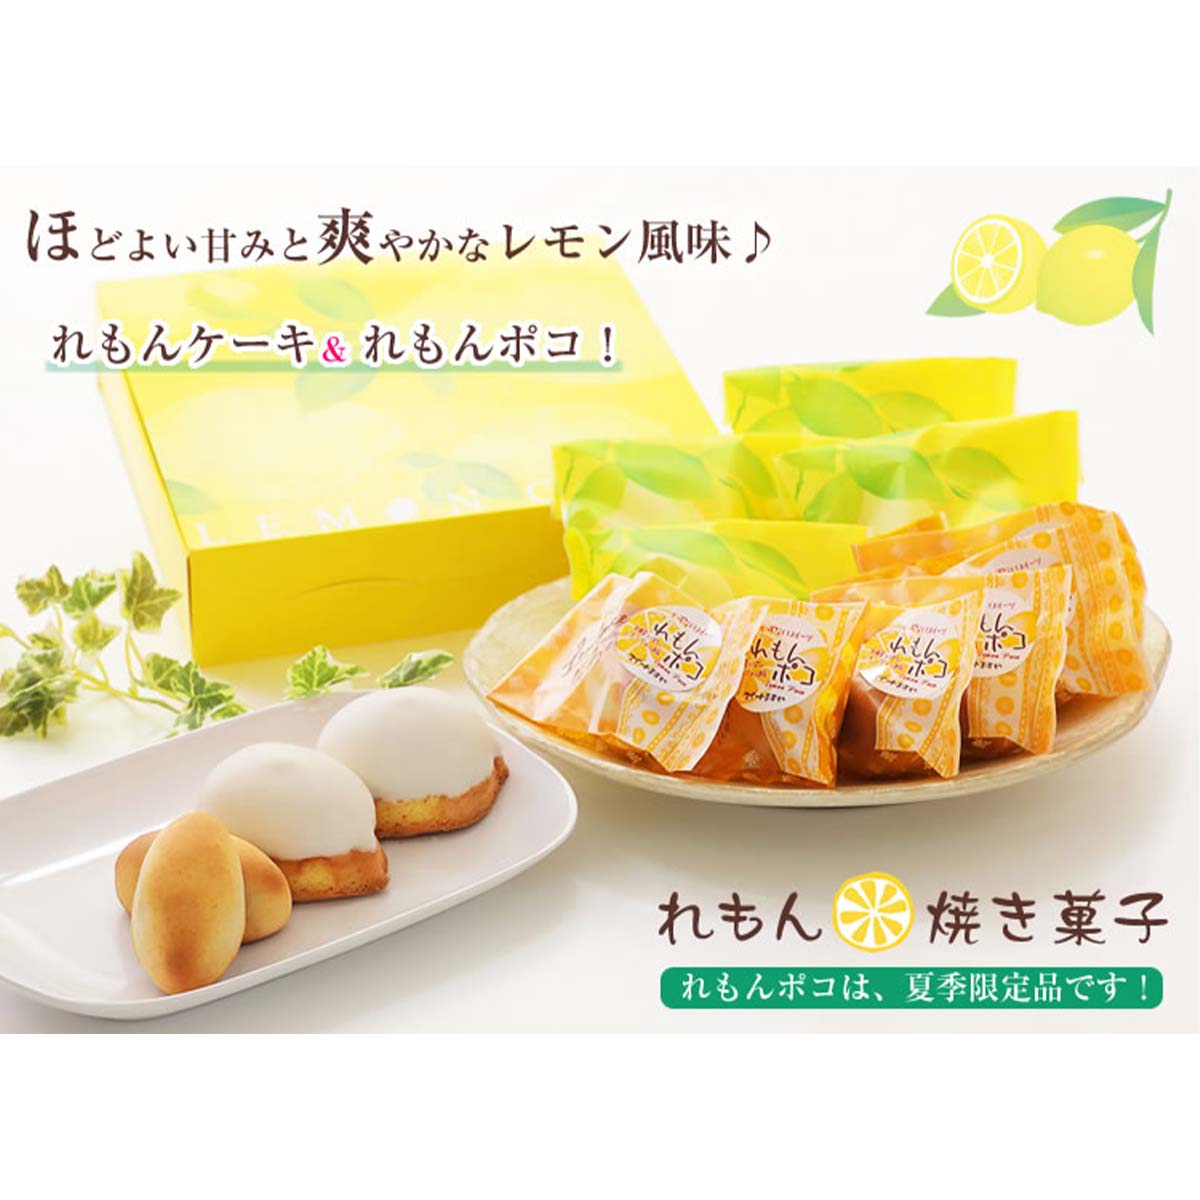 【ふるさと納税】 夏季限定 レモン菓子ギフト レモン ケーキ 焼き菓子 詰め合わせ お中元 暑中見舞い プレゼント 北海道・新ひだか町からお届けします